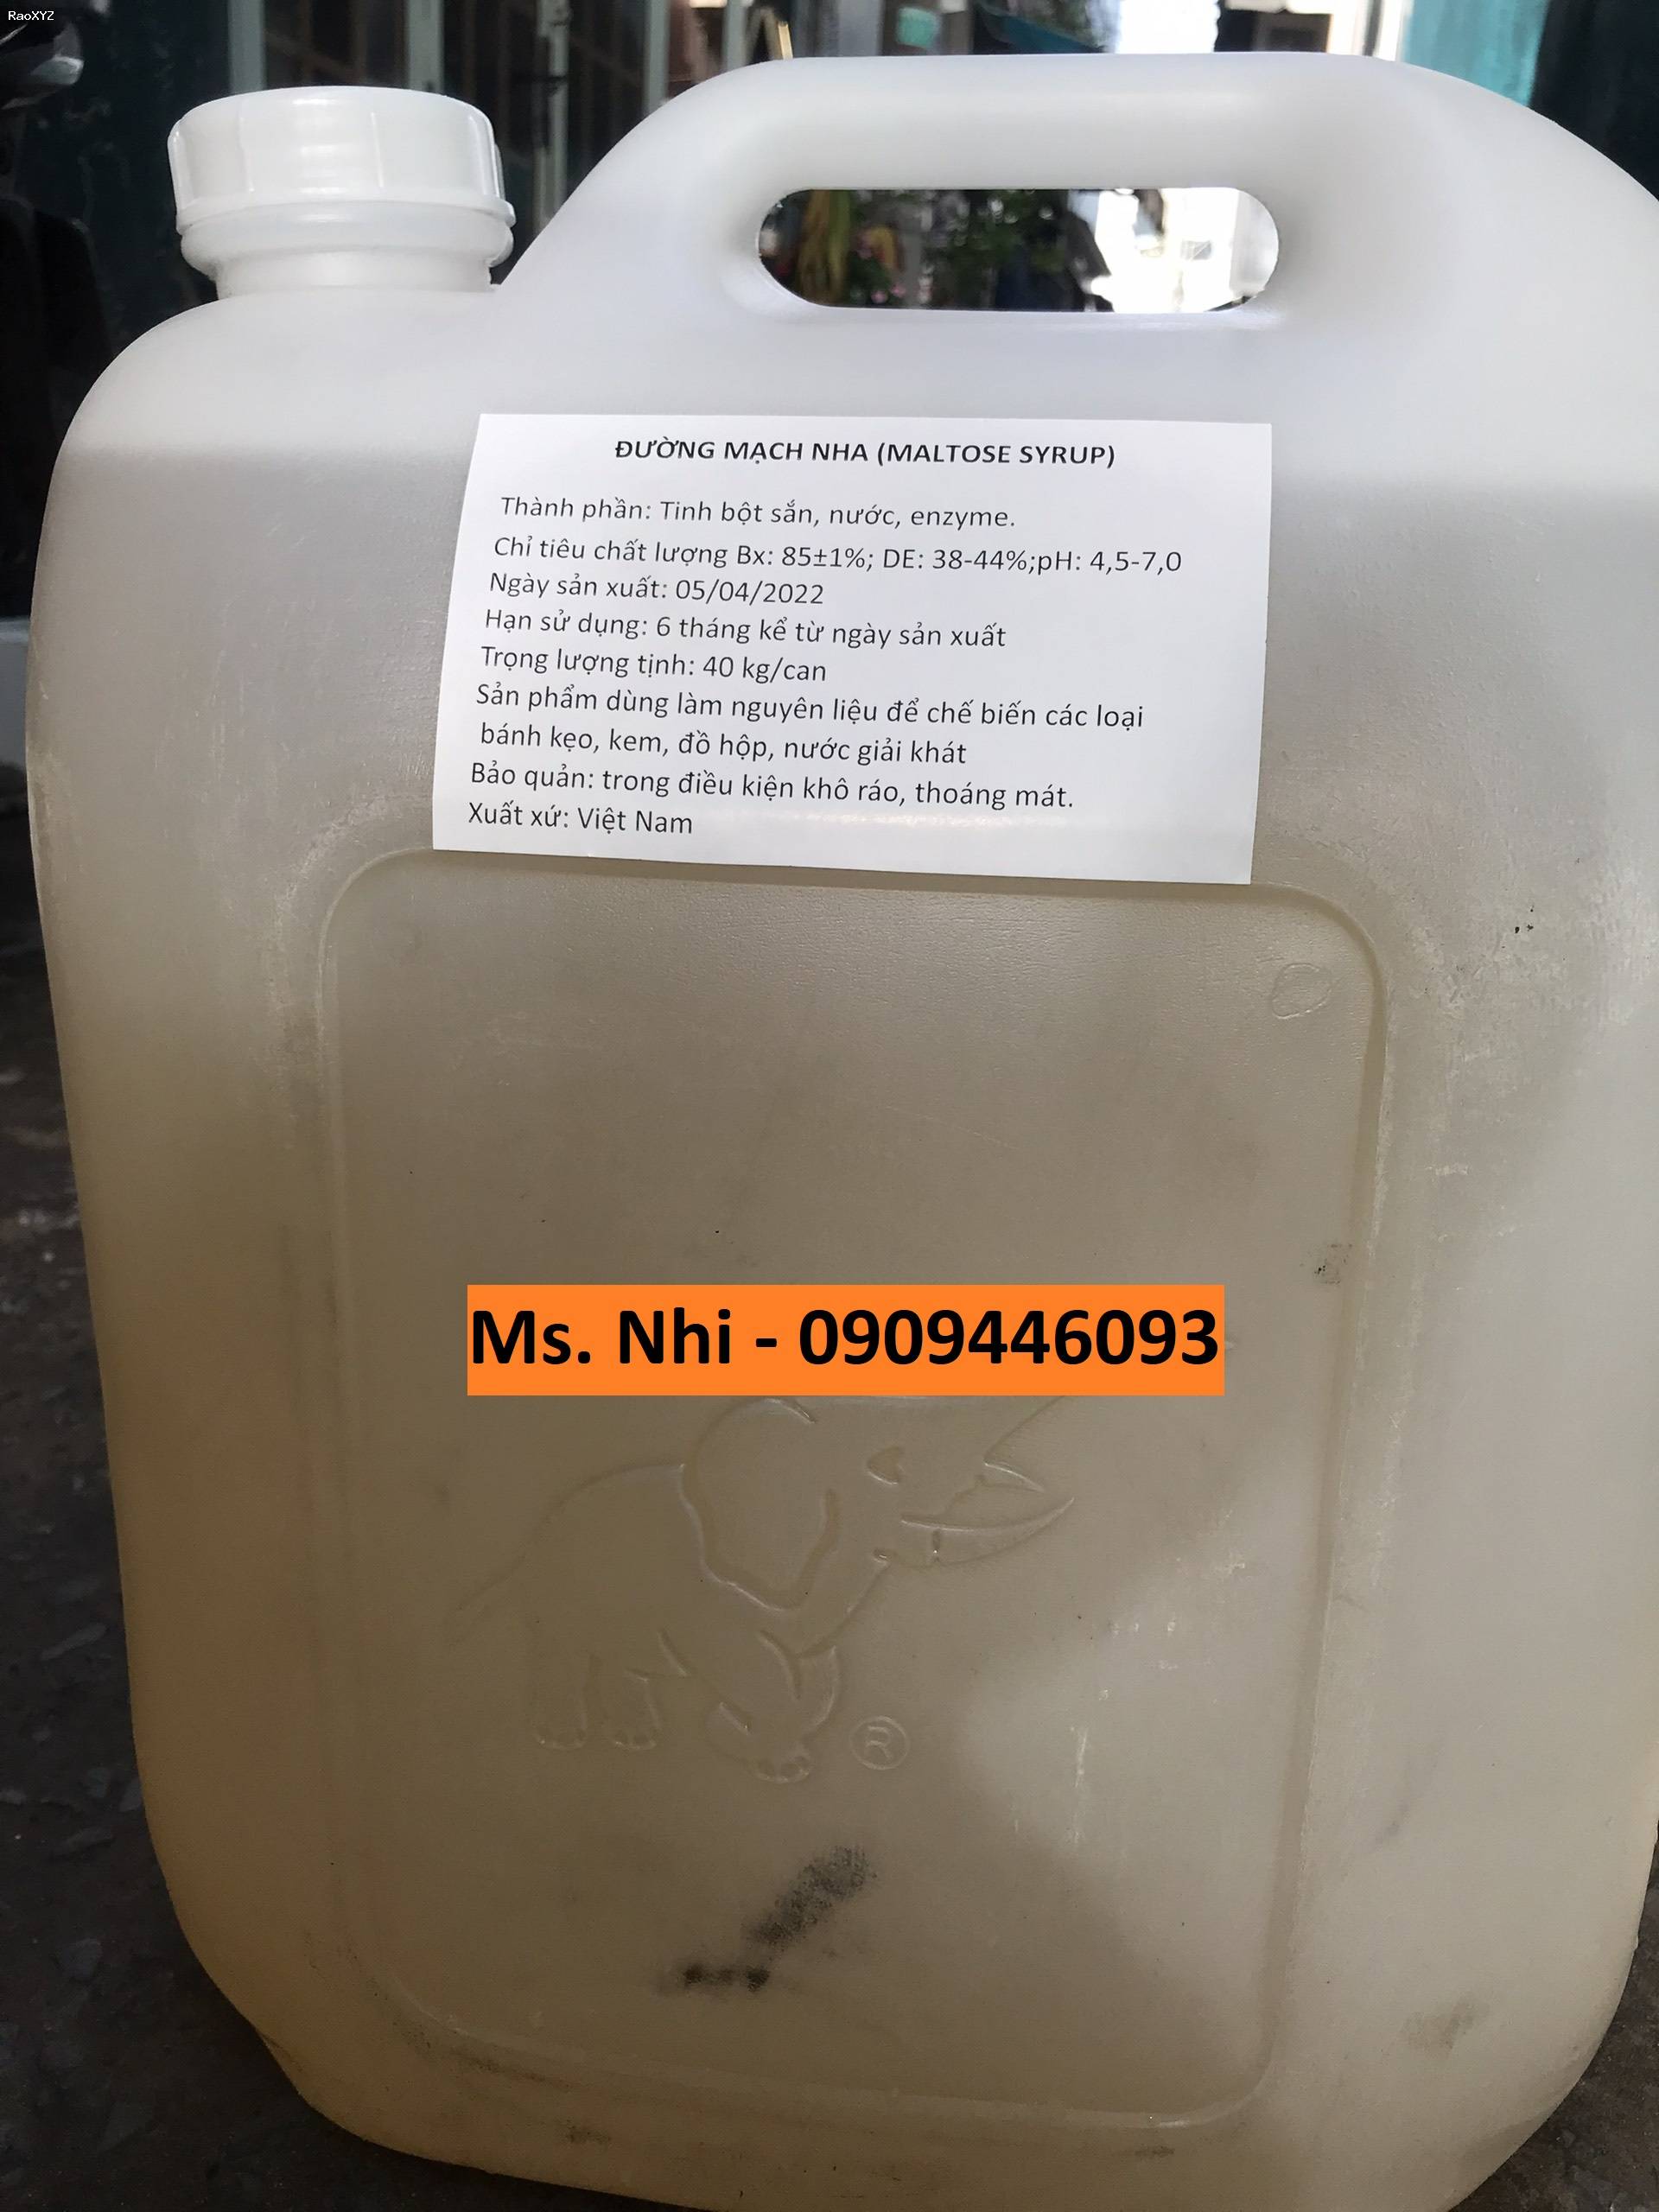 Đường Mạch nha Việt Nam - Maltose Syrup thùng chuyên dụng 40kg